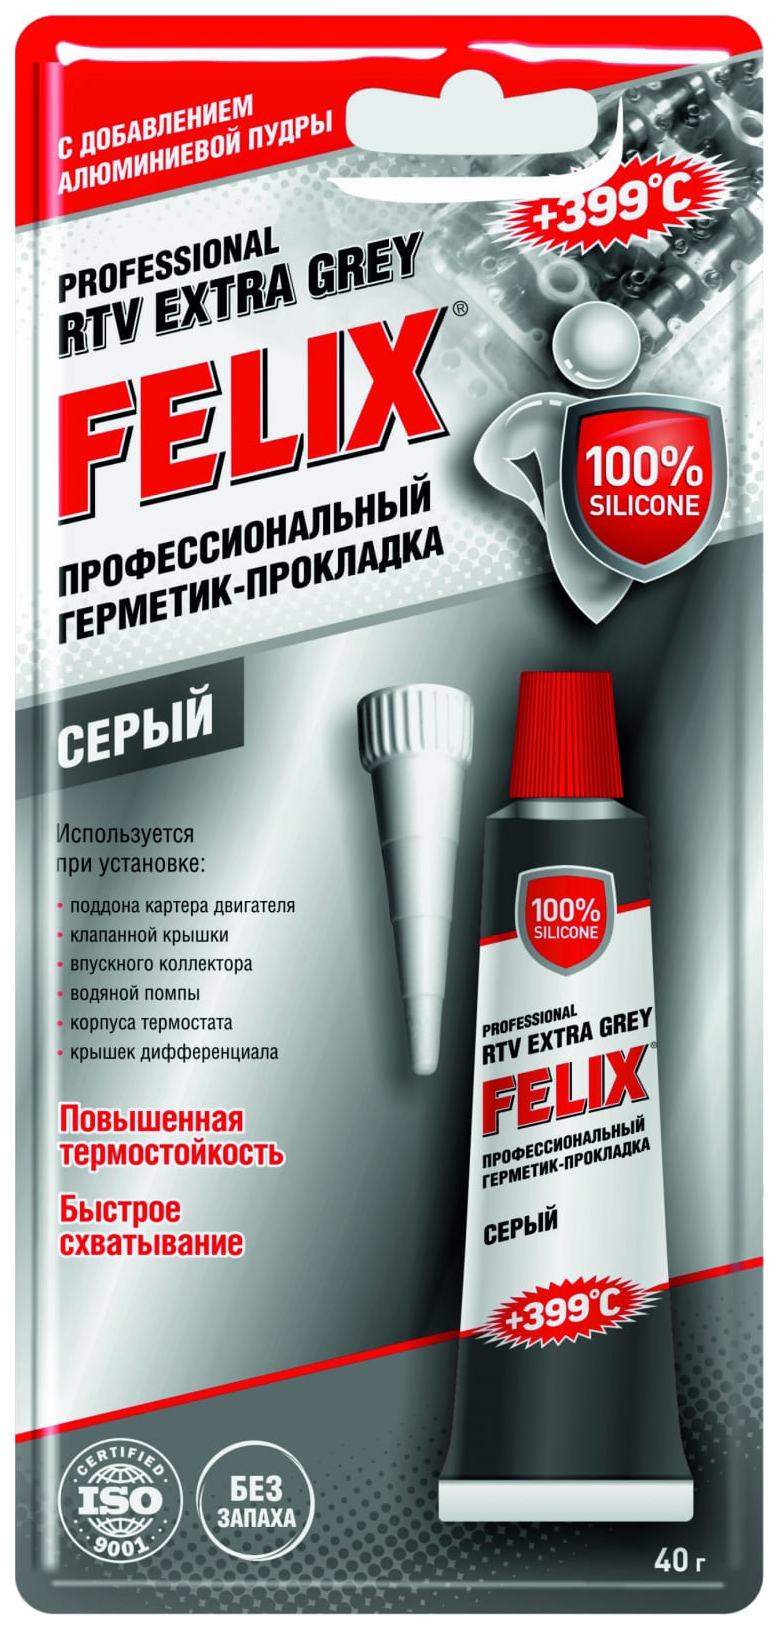 Герметик-прокладка FELIX серый (40 г)